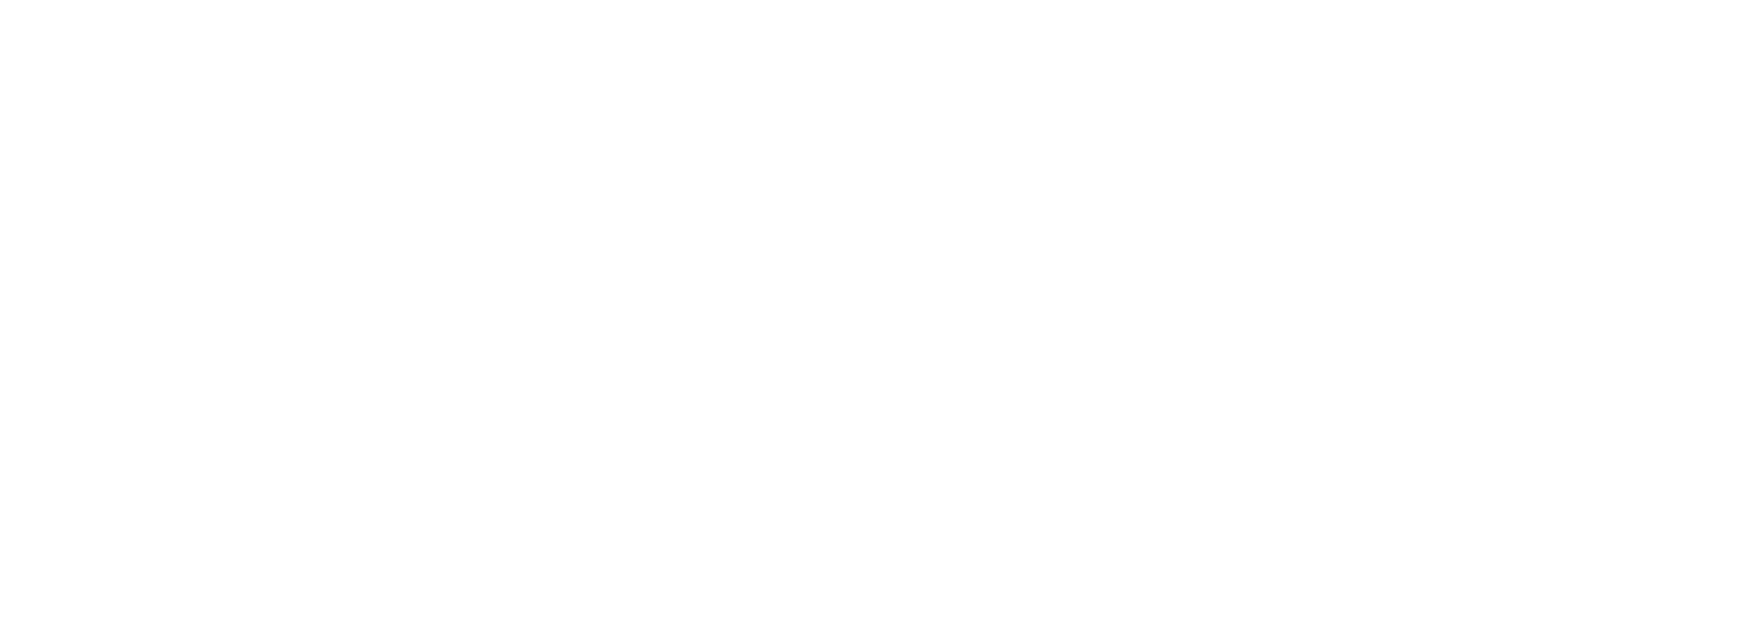 The Health Plan white logo